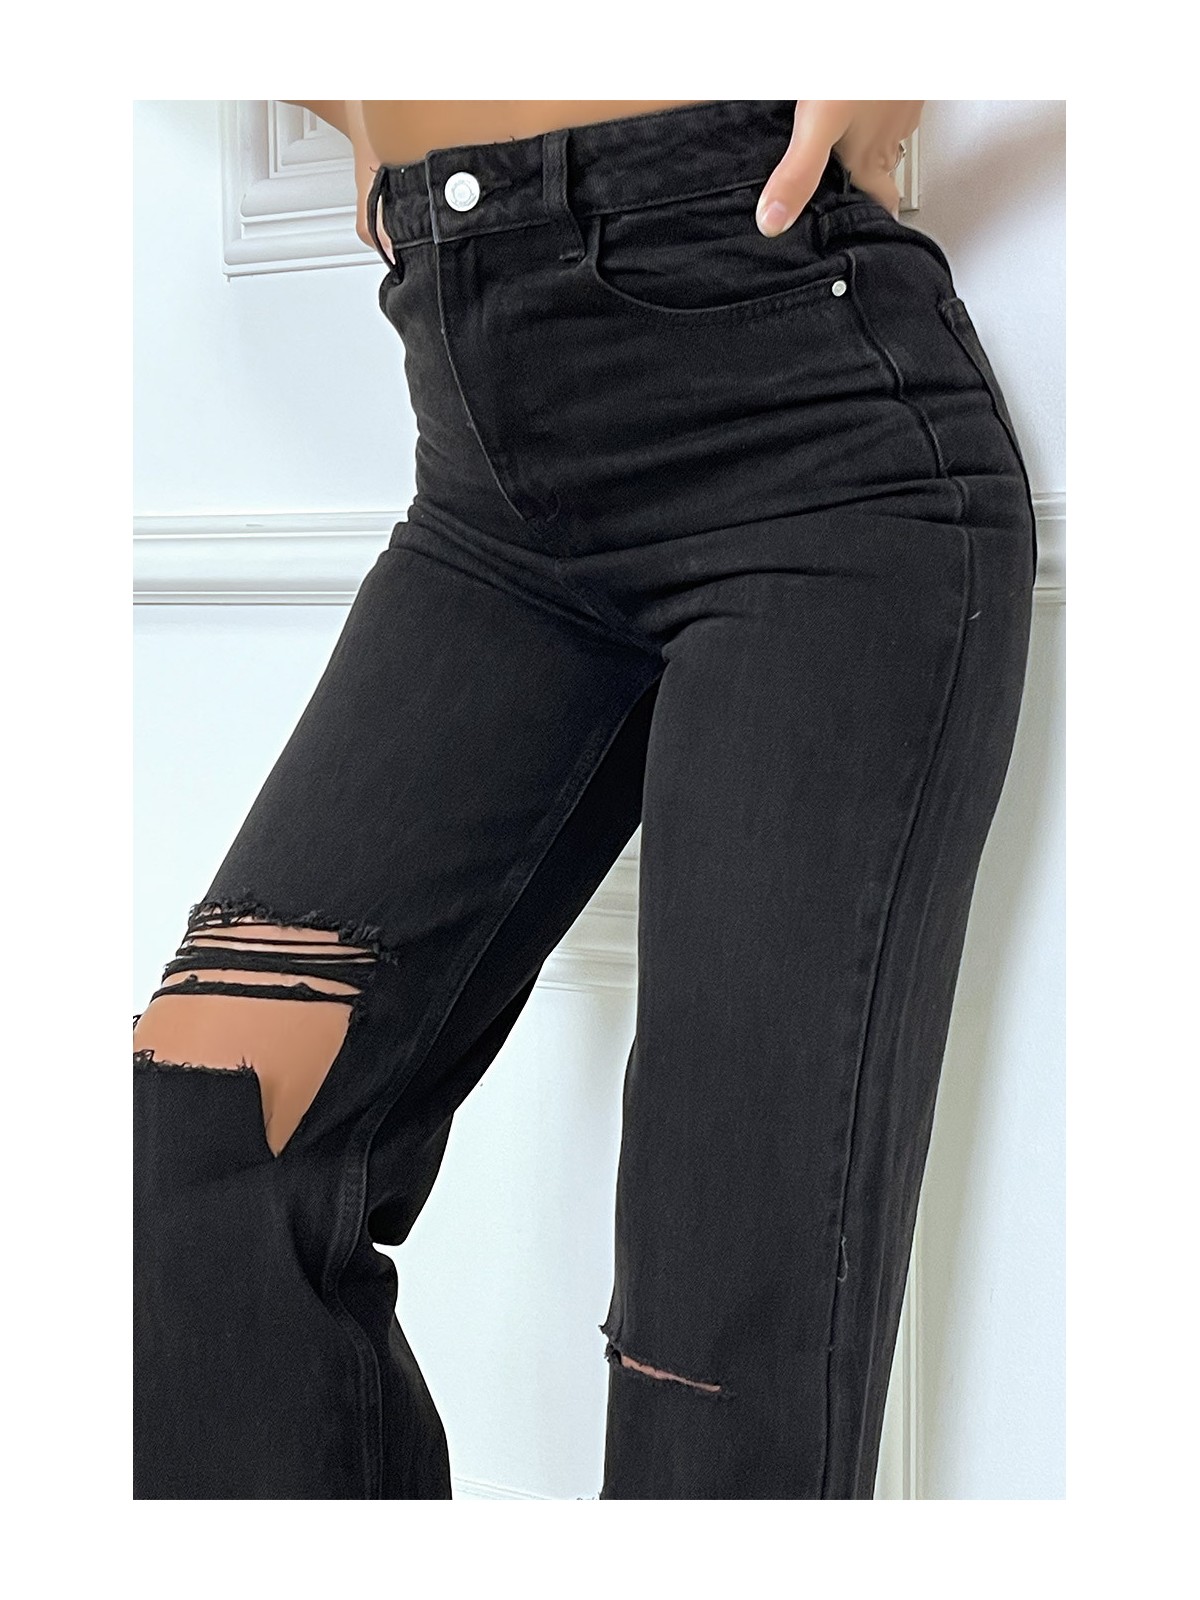 Jeans boot-cut noir taille haute déchiré aux genoux. Jeans hyper tendance 2021 instagram et TikTok - 8